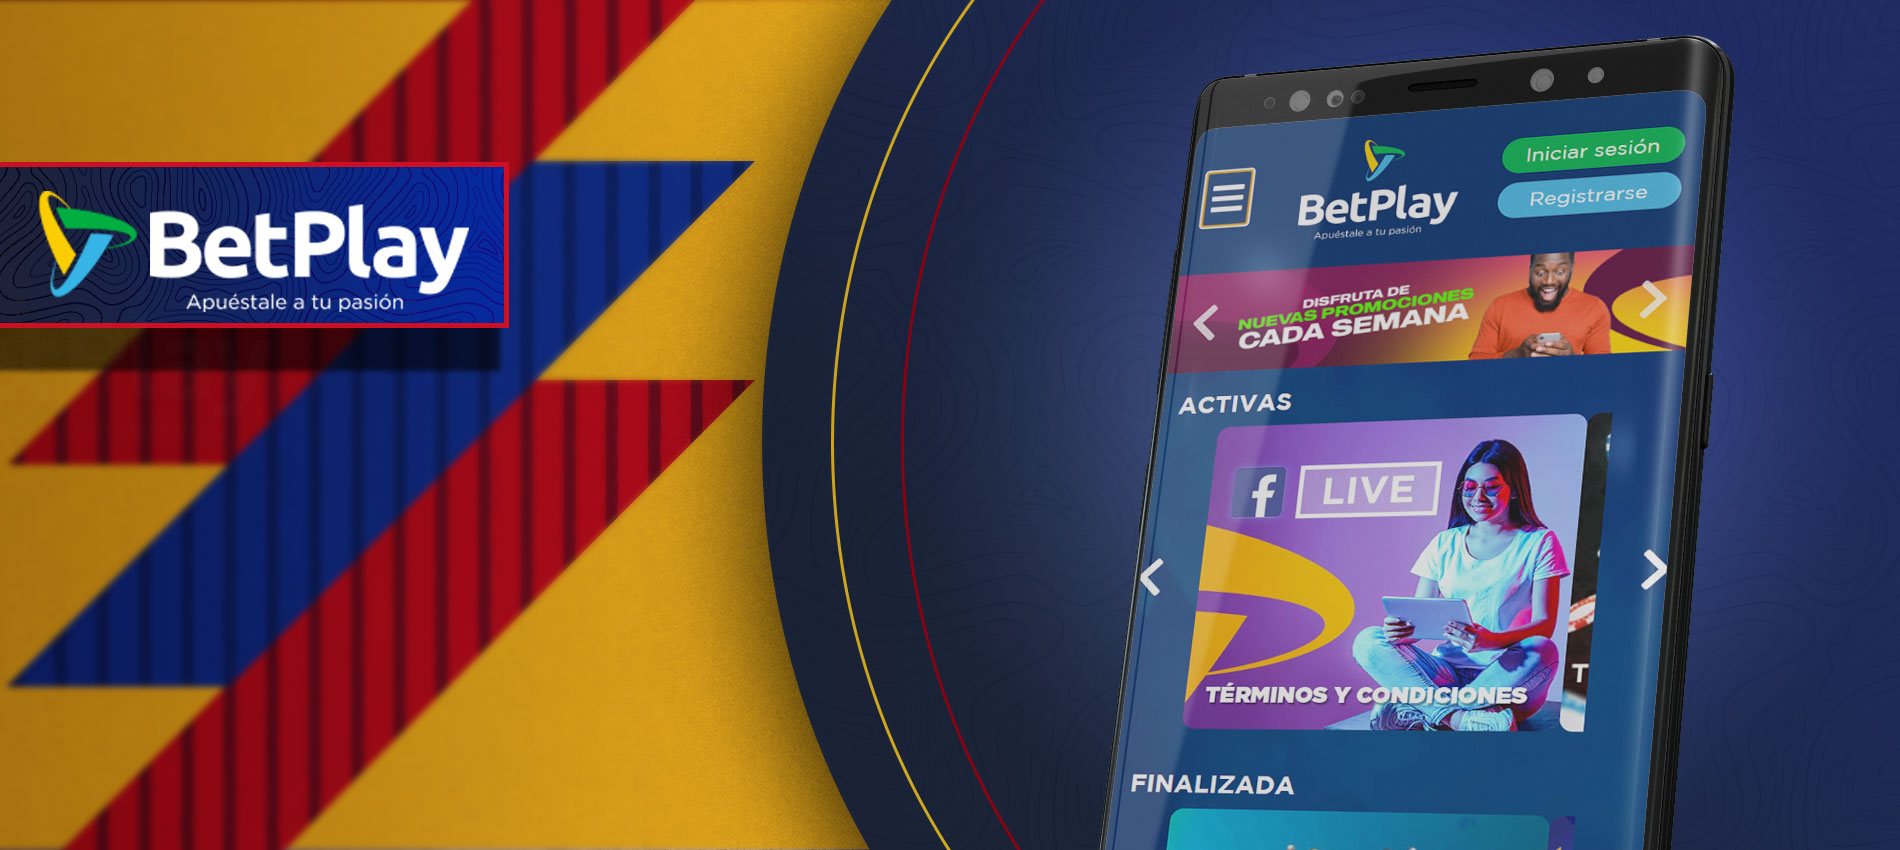 La aplicación BetPlay es una de las mejores aplicaciones para los jugadores colombianos.